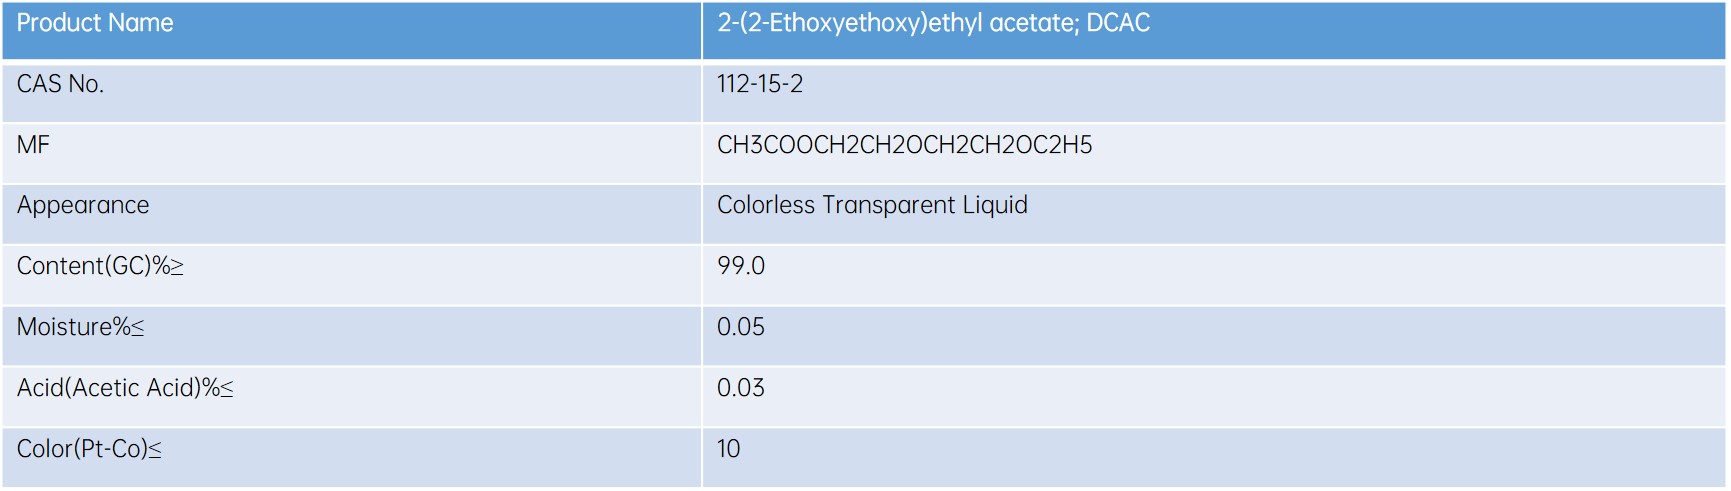 2-(2-Ethoxyethoxy)ethyl Acetate